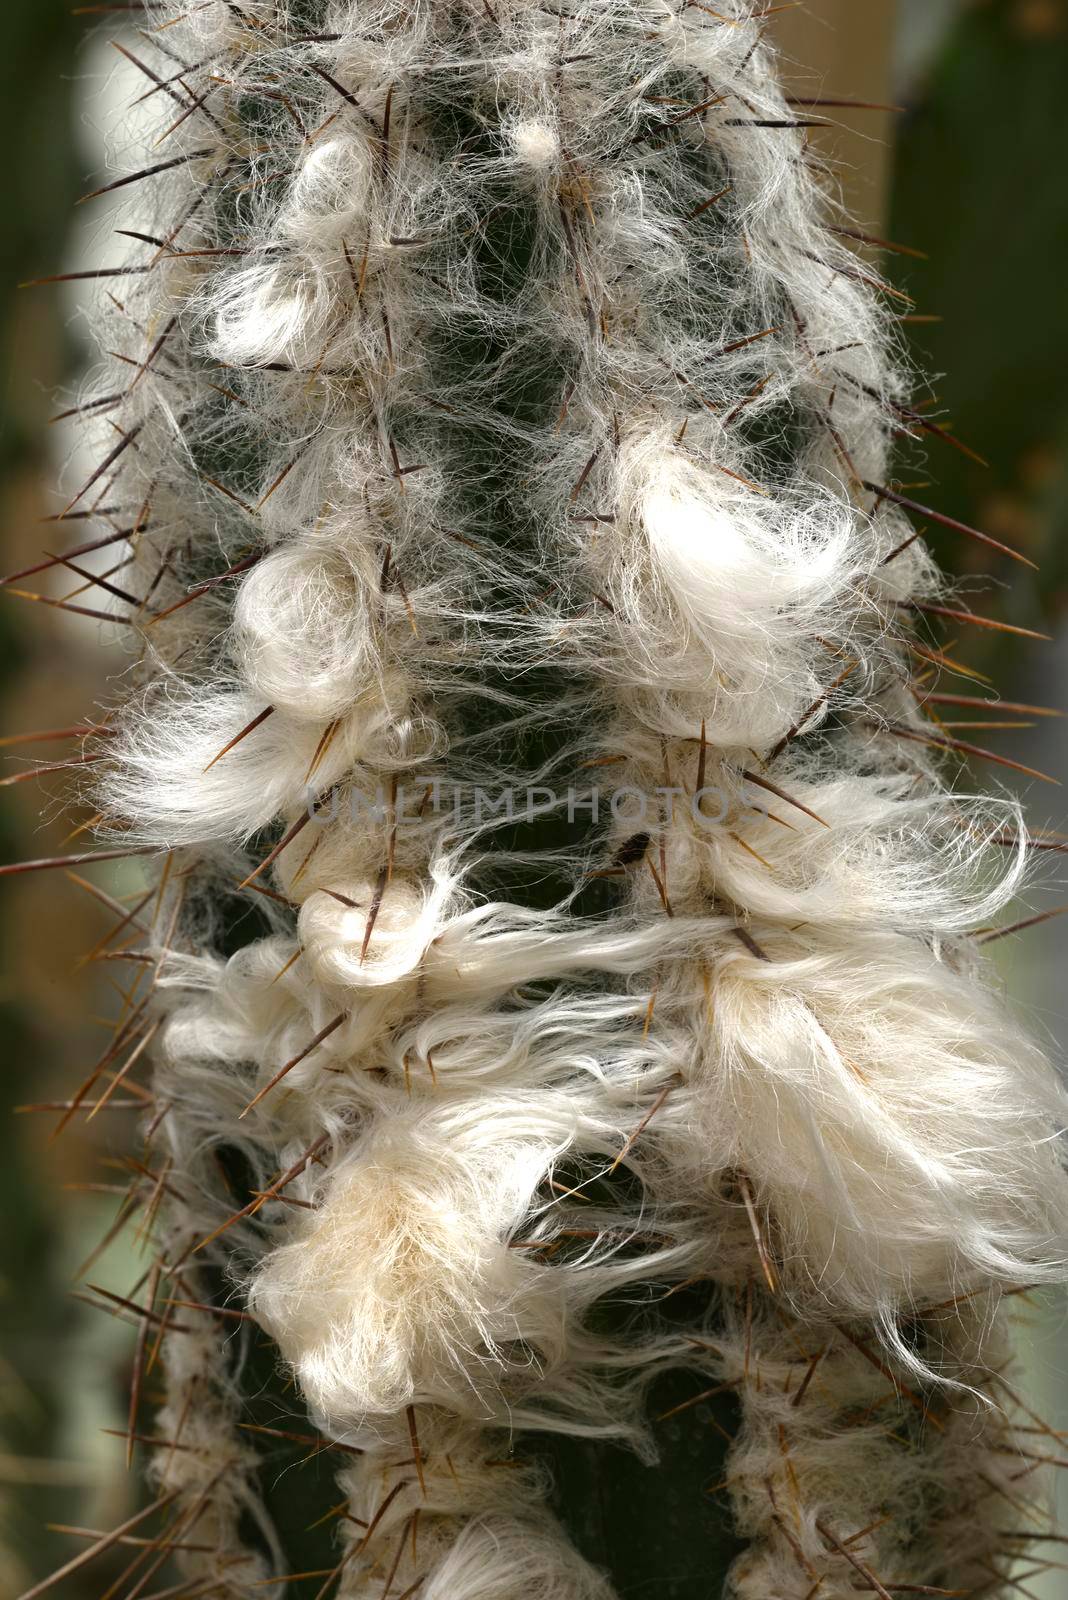 Detail of old man cactus beard growing around thorns